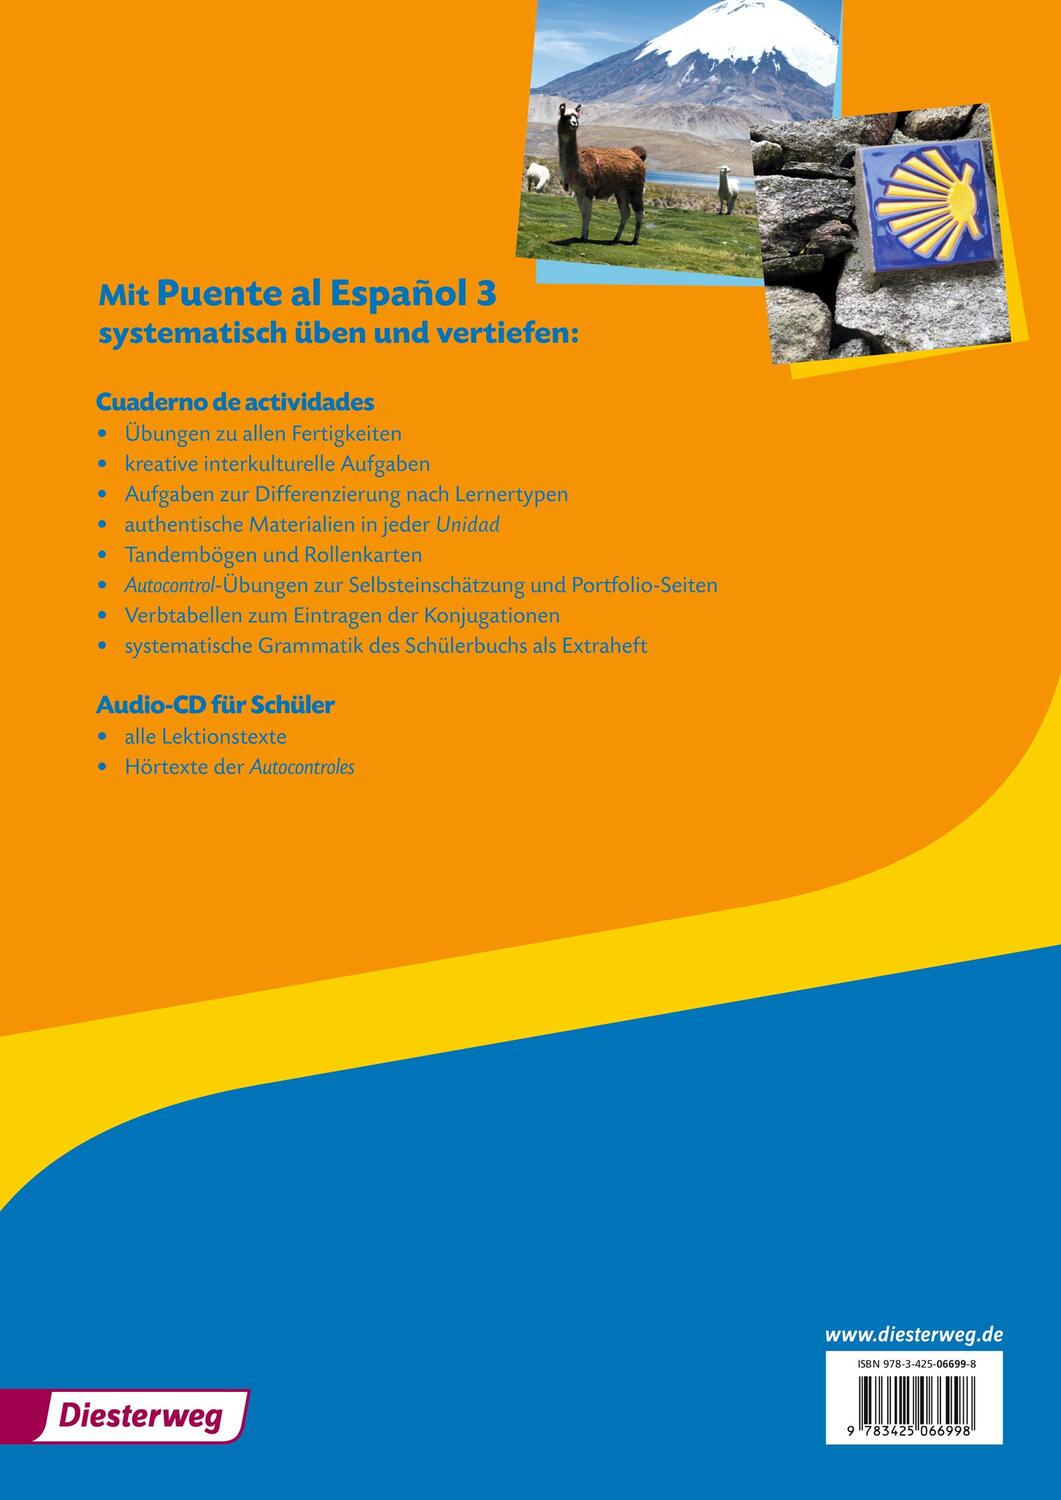 Cover: 9783425066998 | Puente al Español 3. Cuaderno de actividades. Mit Audio-CD für Schüler